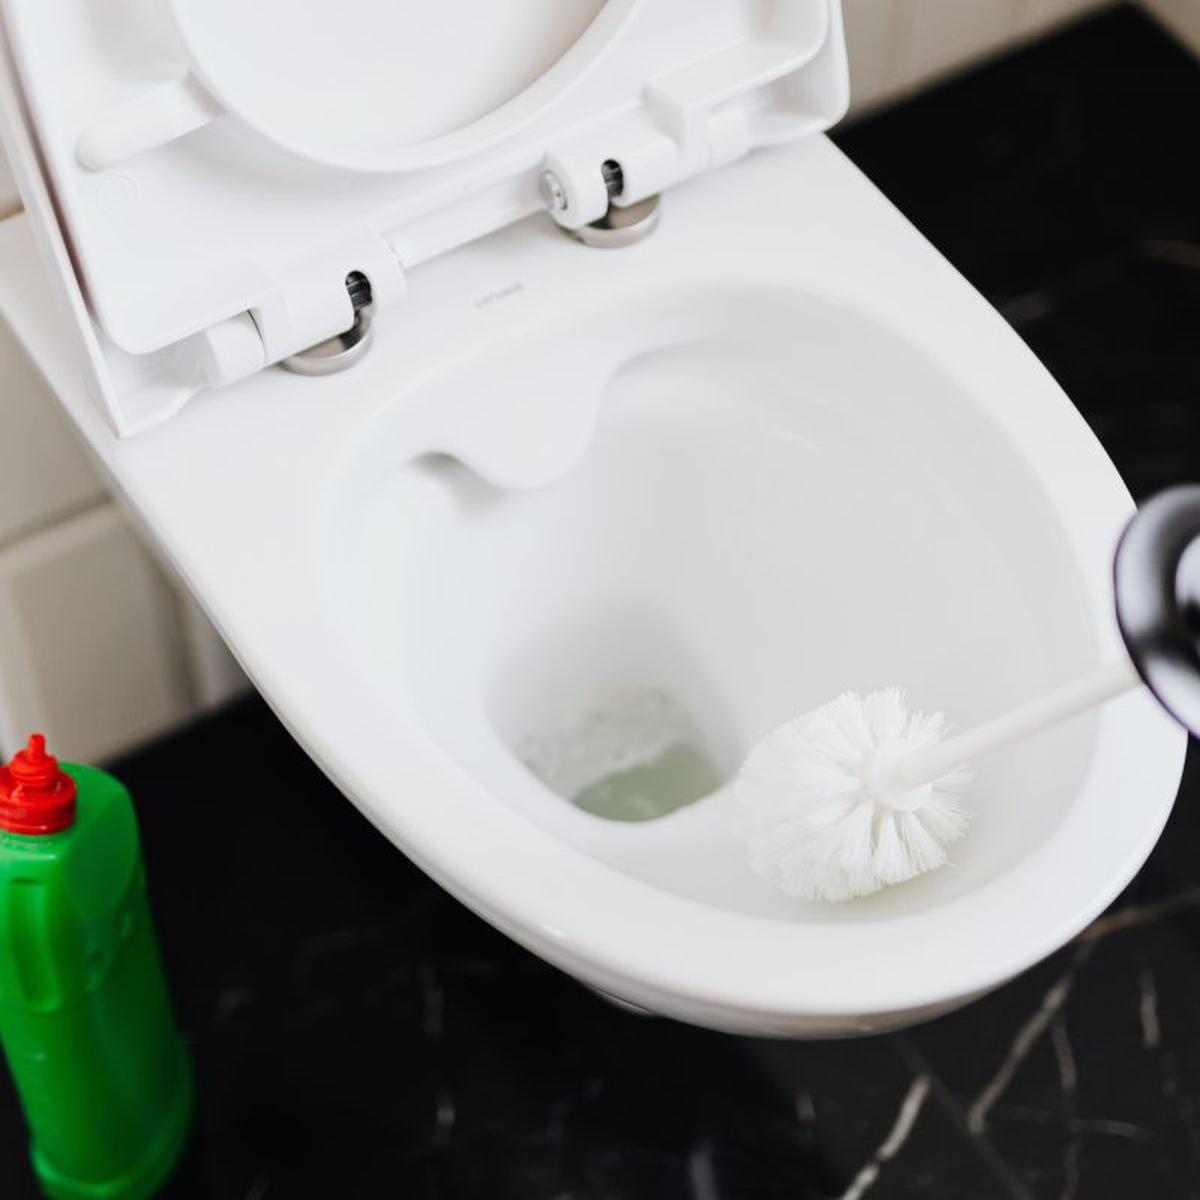 Cómo limpiar el inodoro de tu baño sin utilizar químicos invasivos